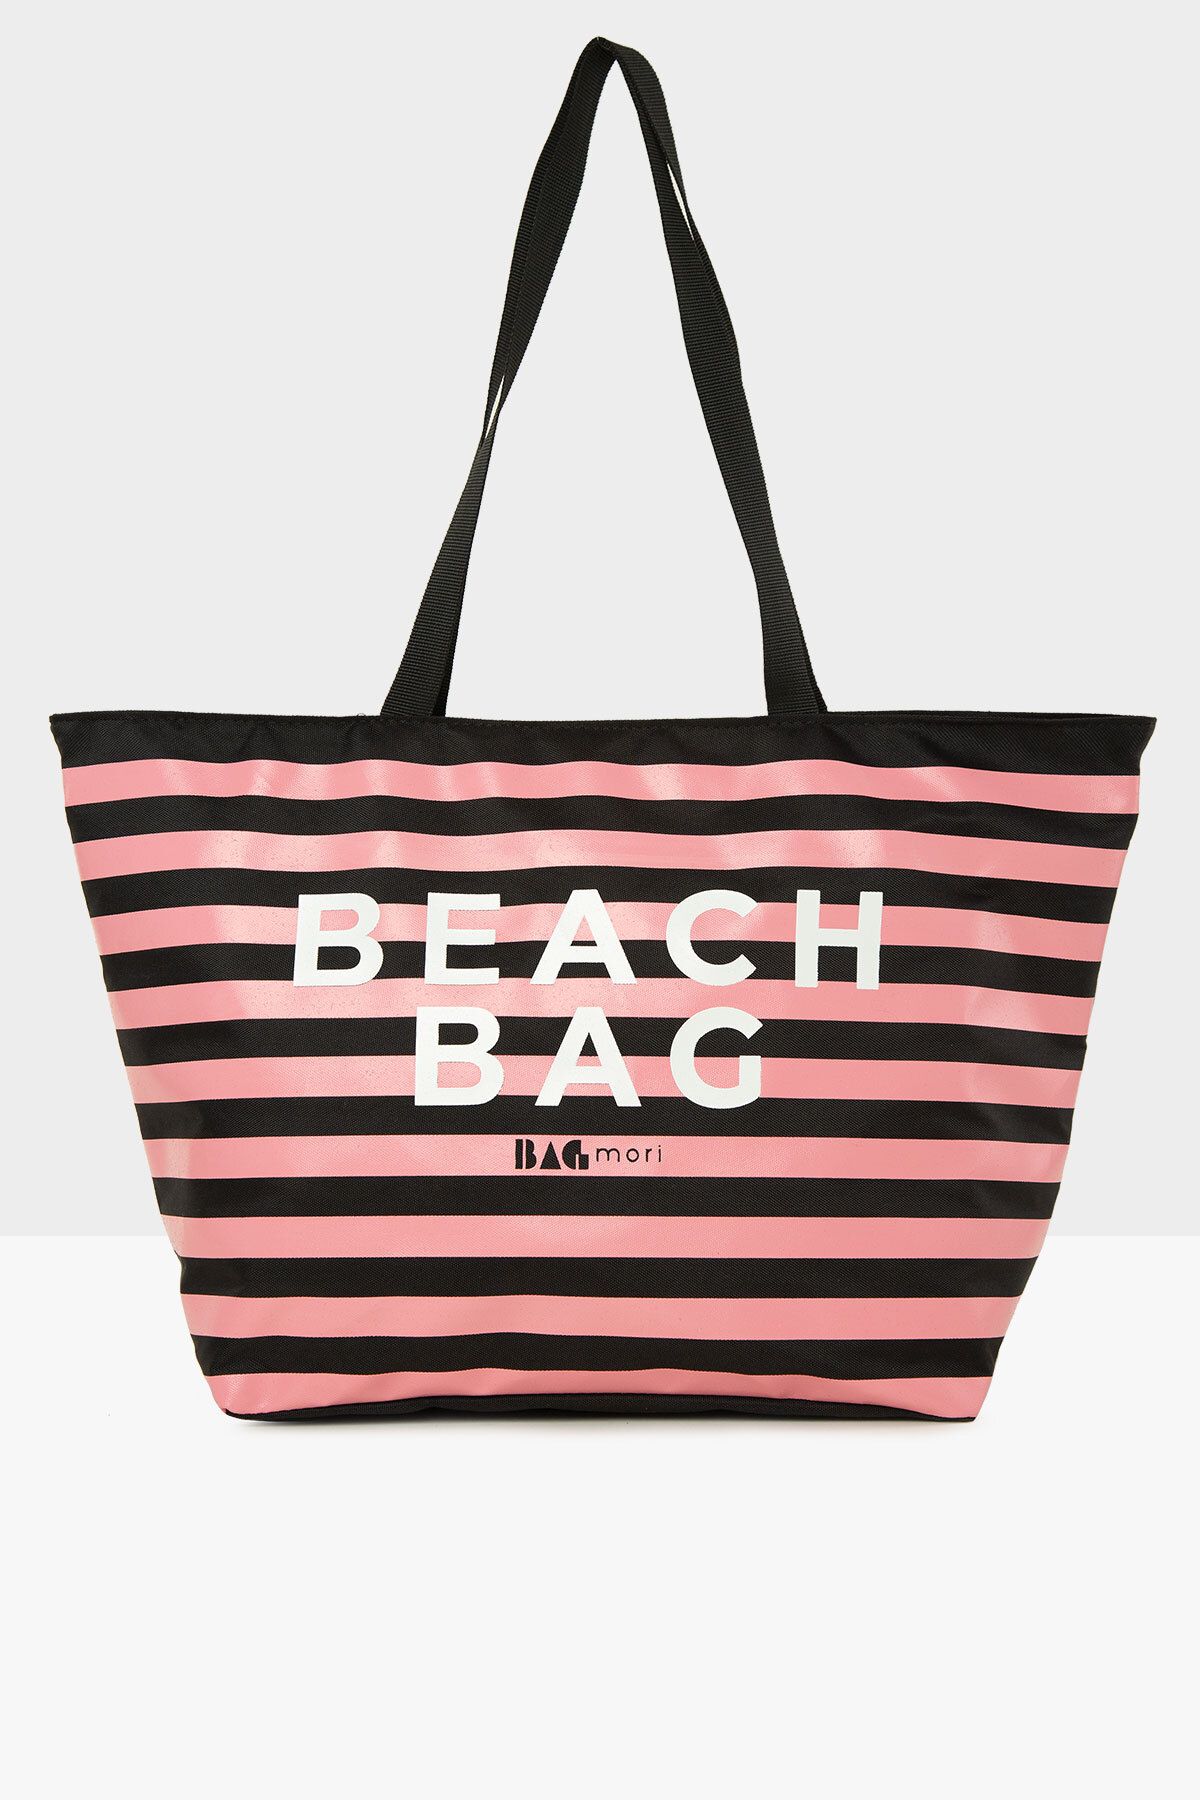 Bagmori Siyah Kadın Çizgili Beach Bag Baskılı Plaj Çantası M000008438